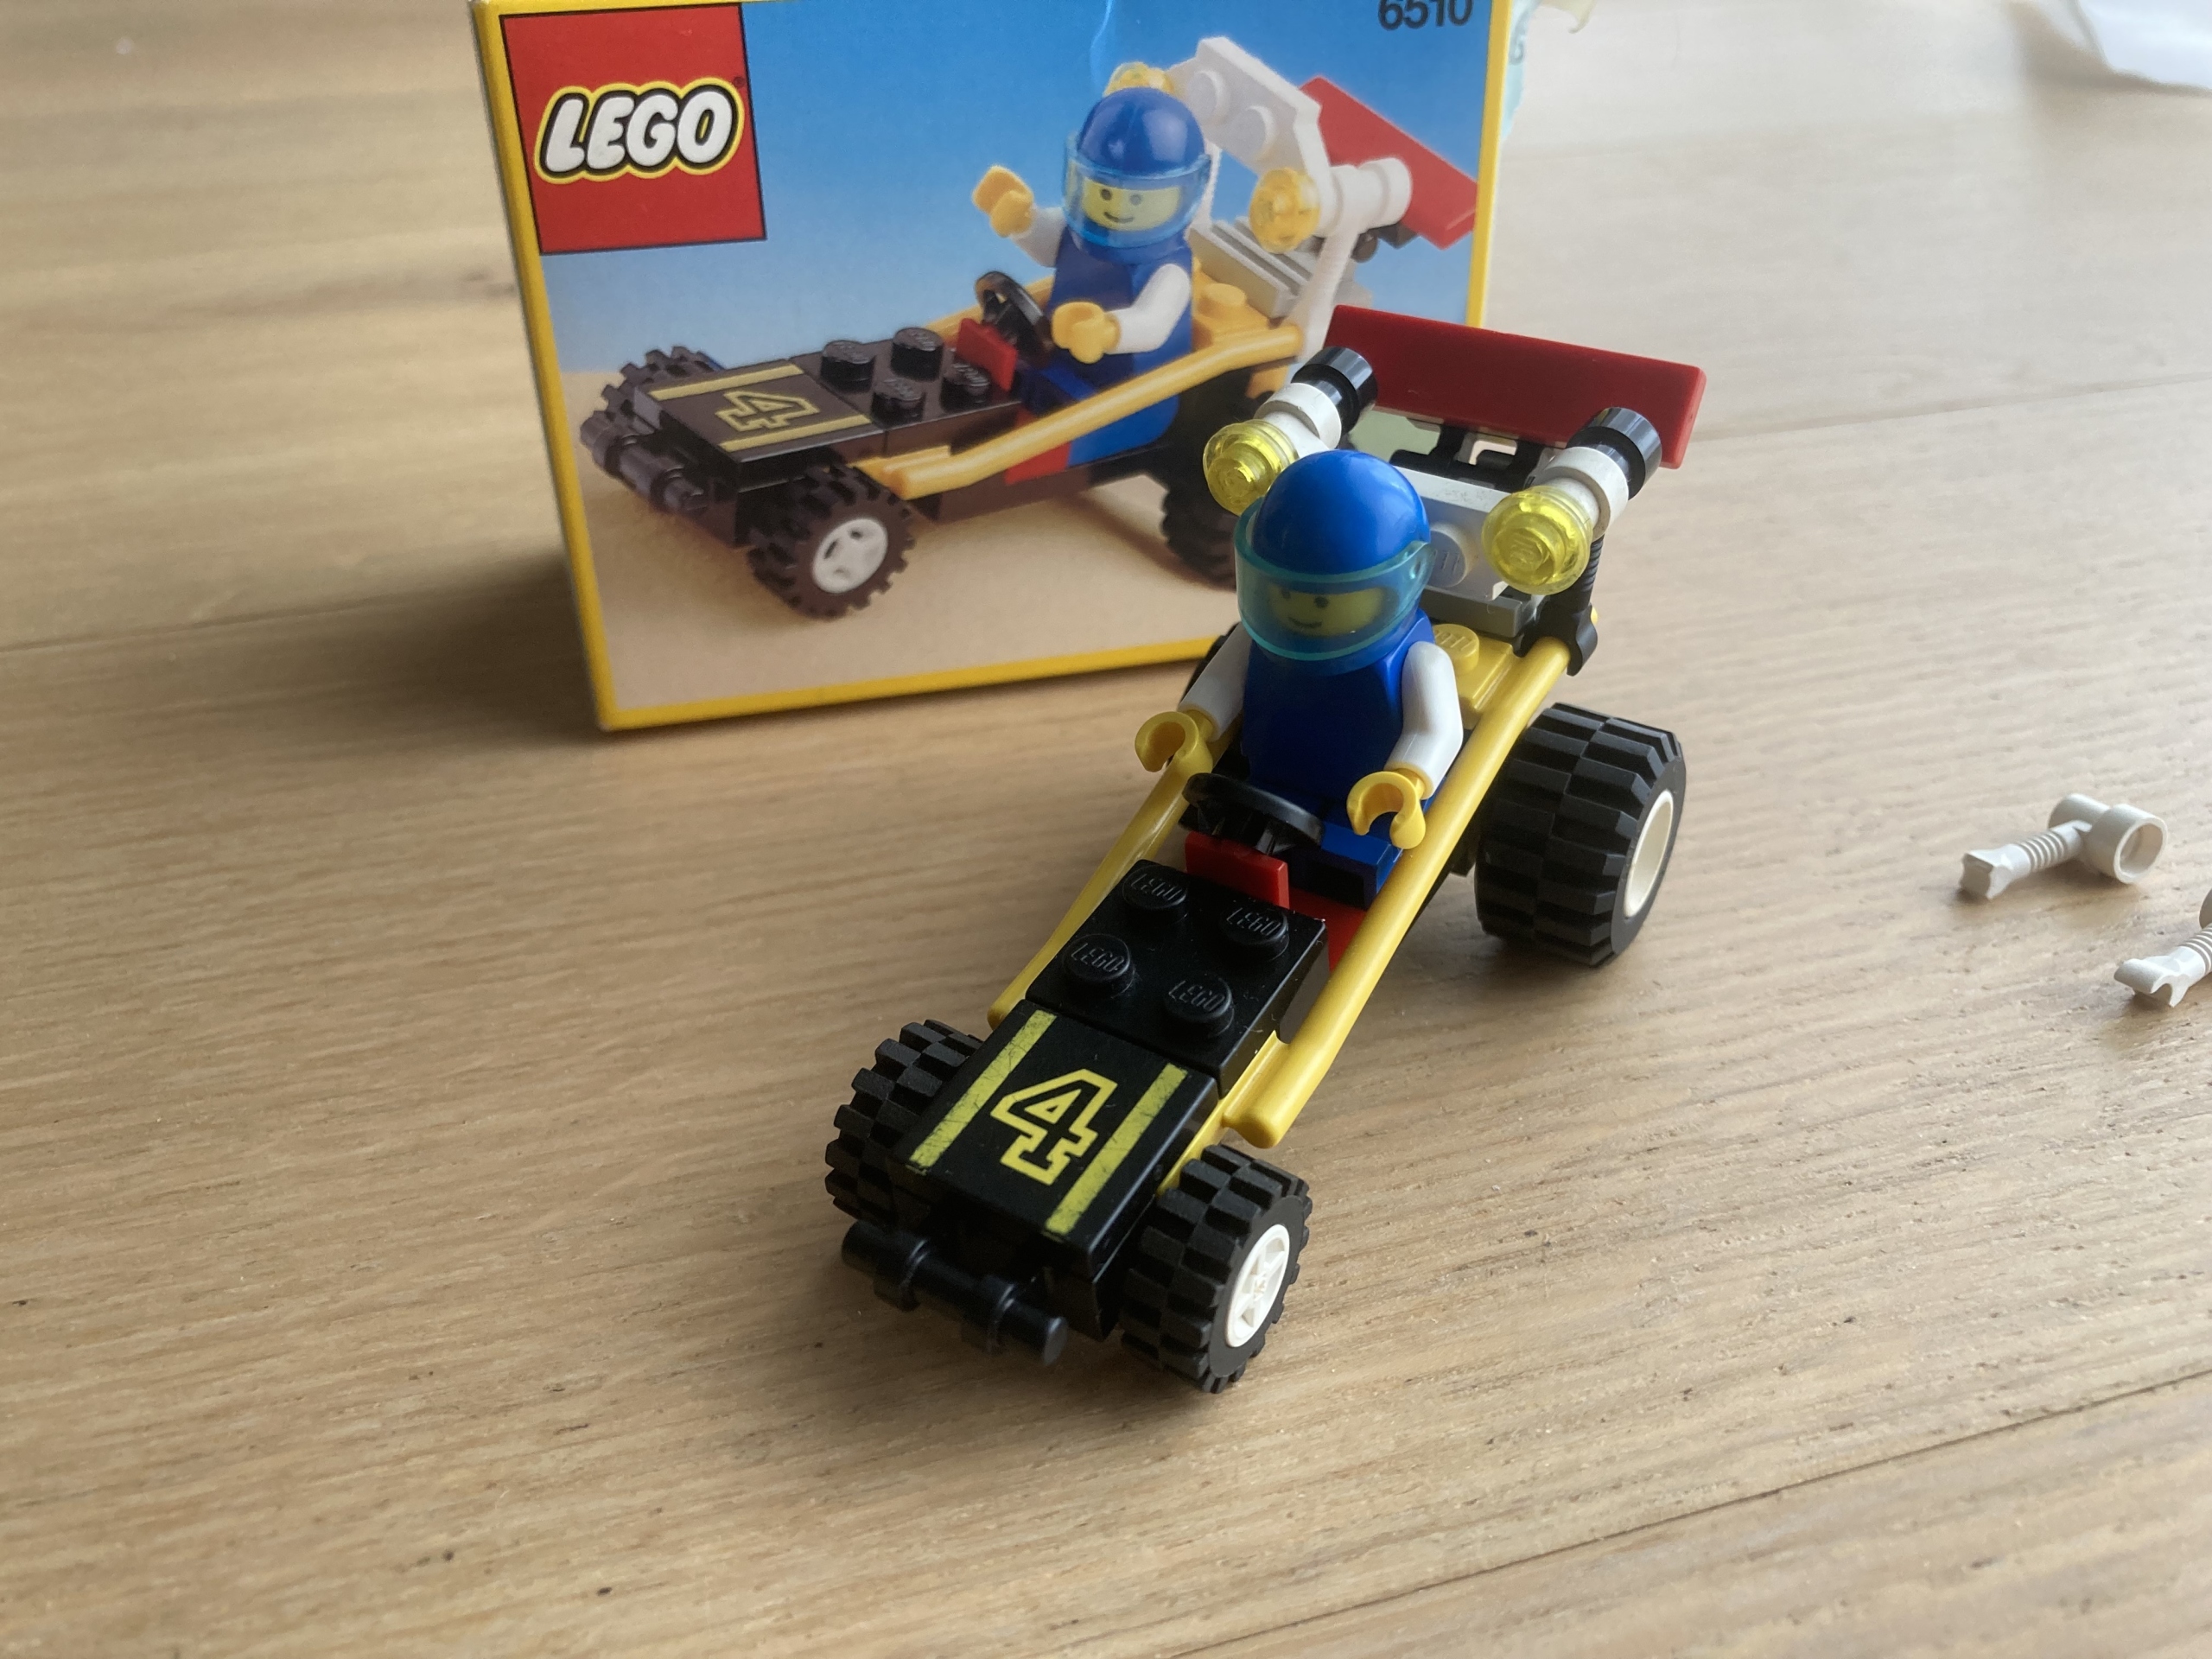 Lego 6510 Mud Racer z 1991 roku pudełko instrukcja | Poznań | Kup teraz na  Allegro Lokalnie